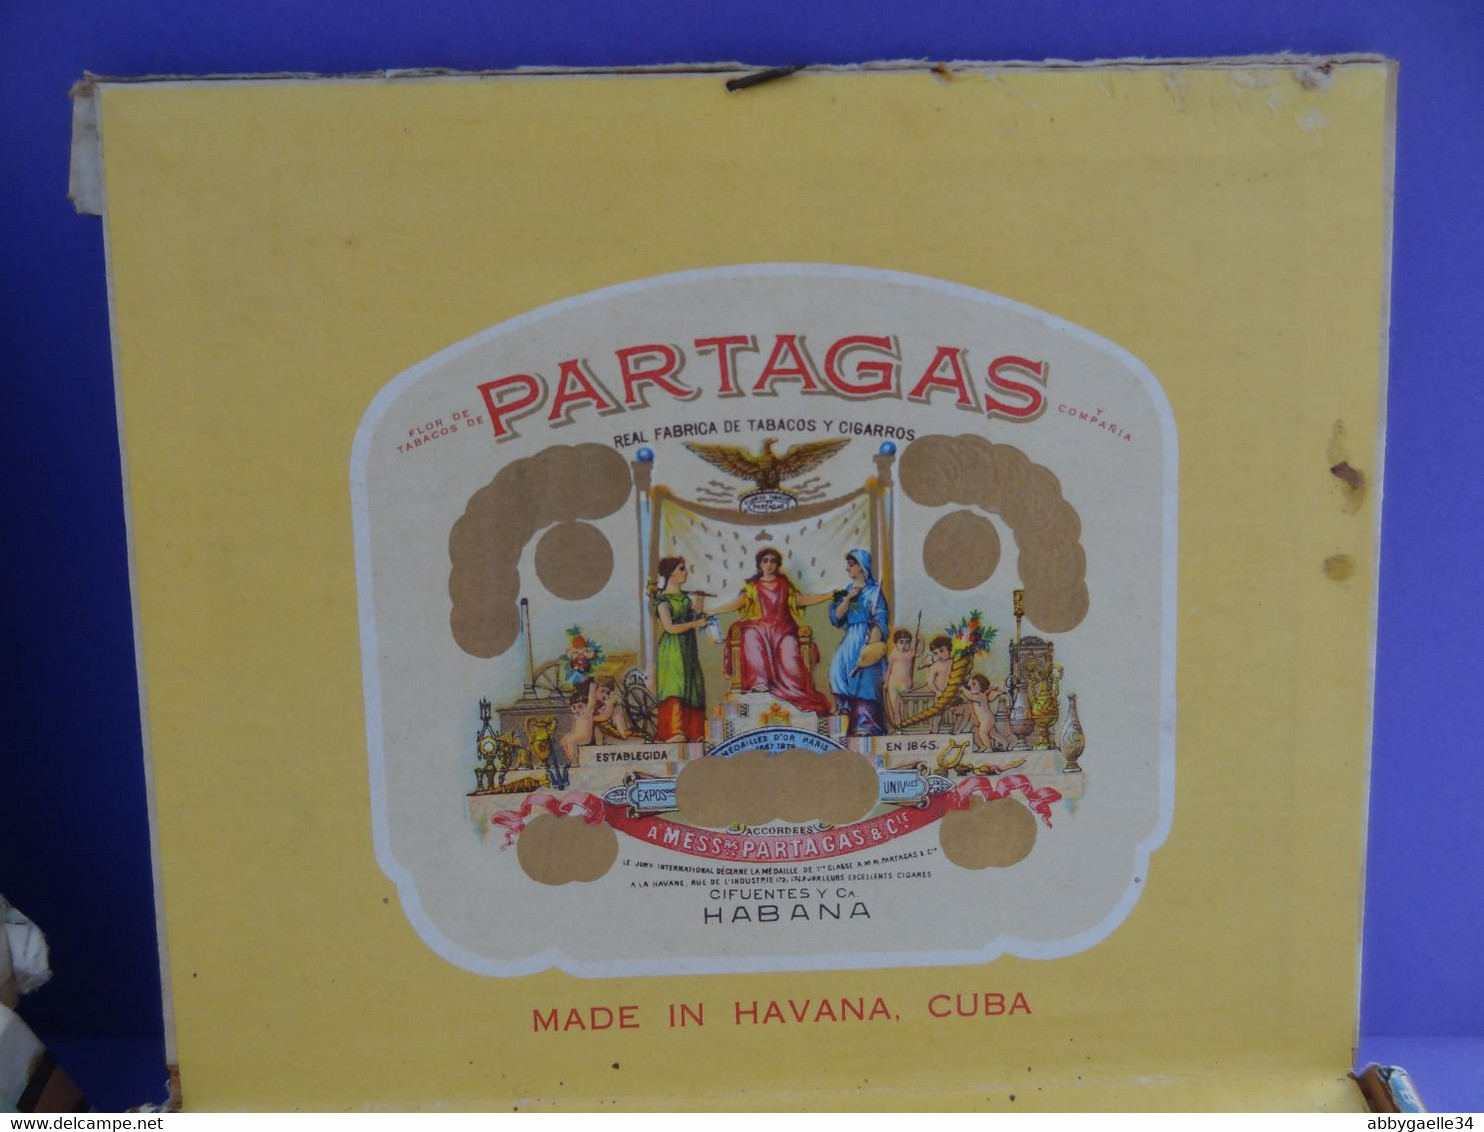 * Lot de 3 boîtes de tabac vides bois * Partagas Flor de Tabacos, Quintero y Hno, Cienfuegos, Cuba Havane Habana (lot 2)